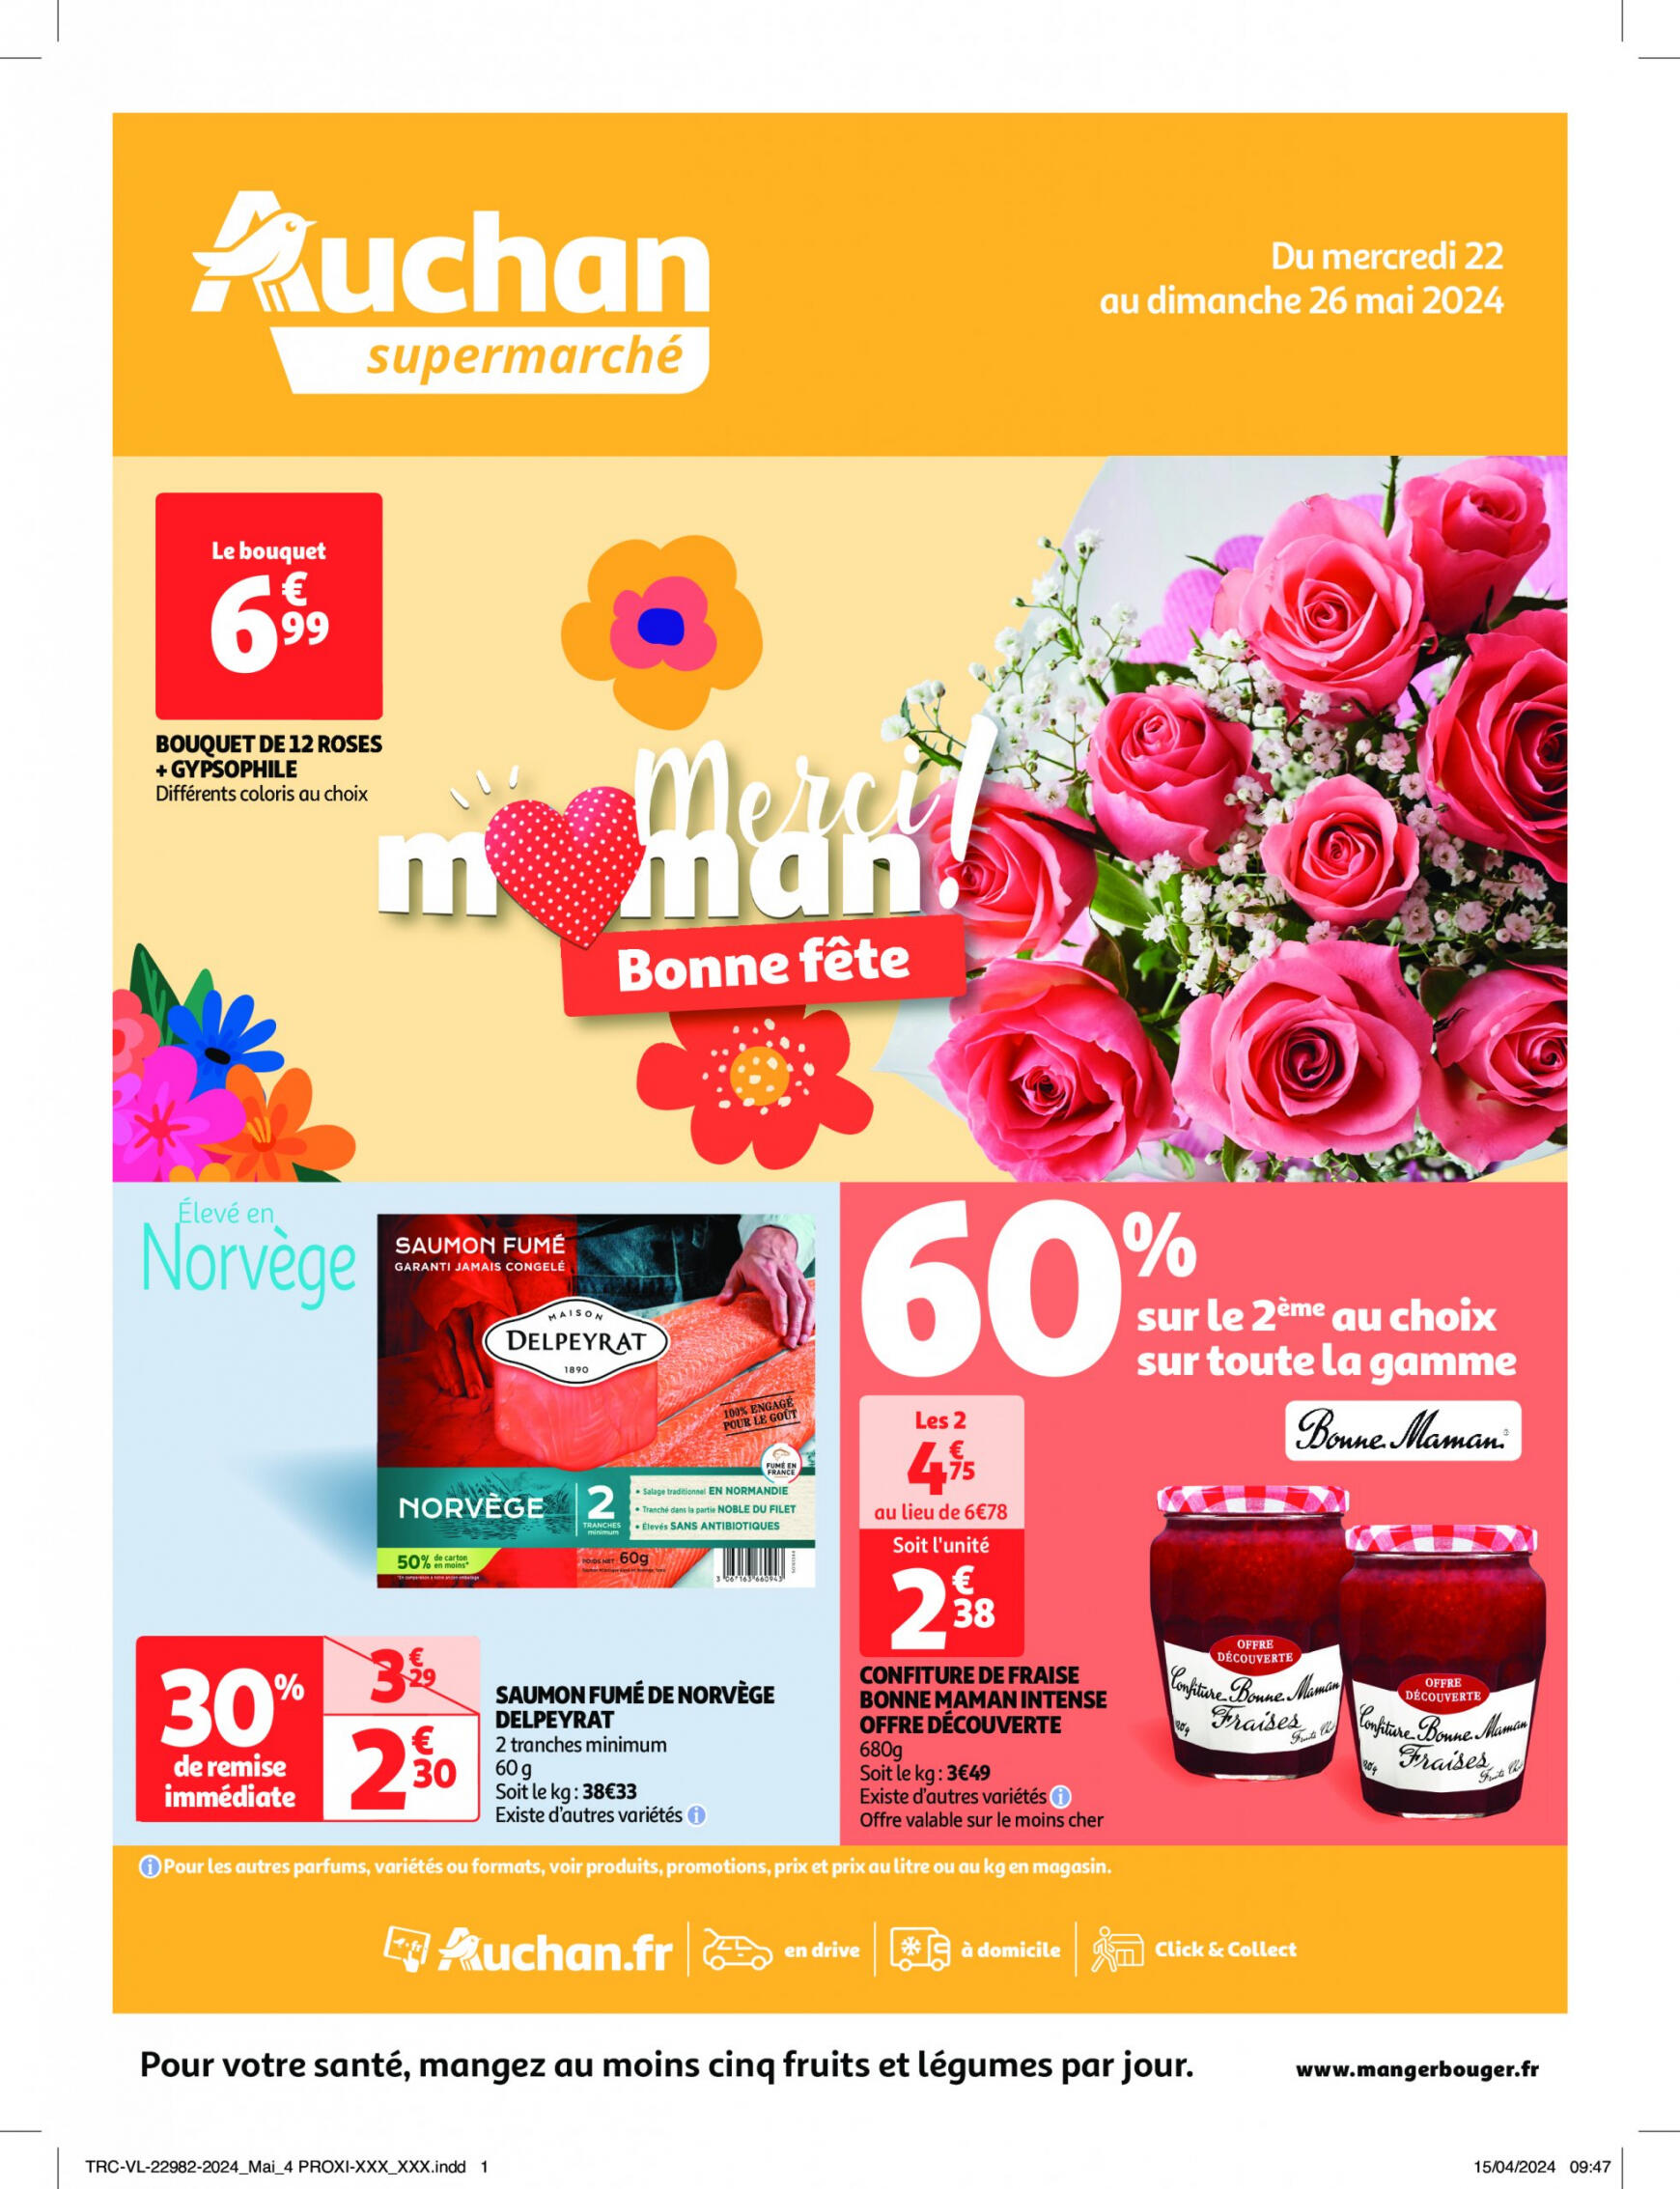 auchan - Auchan supermarché - Faites le plein de bonnes affaires folder huidig 22.05. - 26.05.